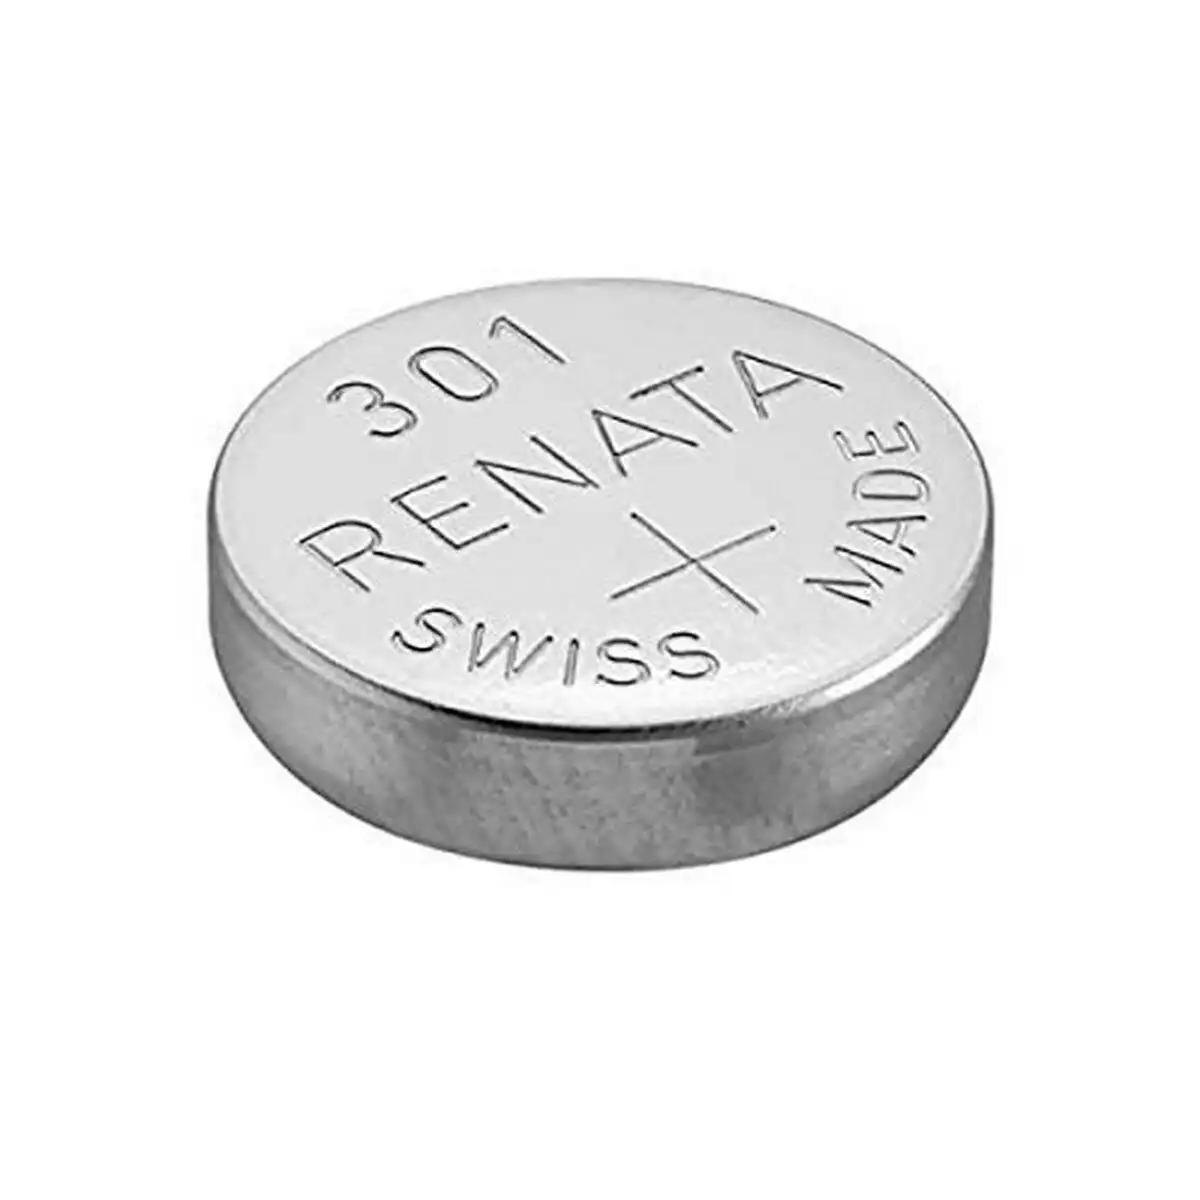 SR43SW / SR1142 / 301 Silver Oxide Battery